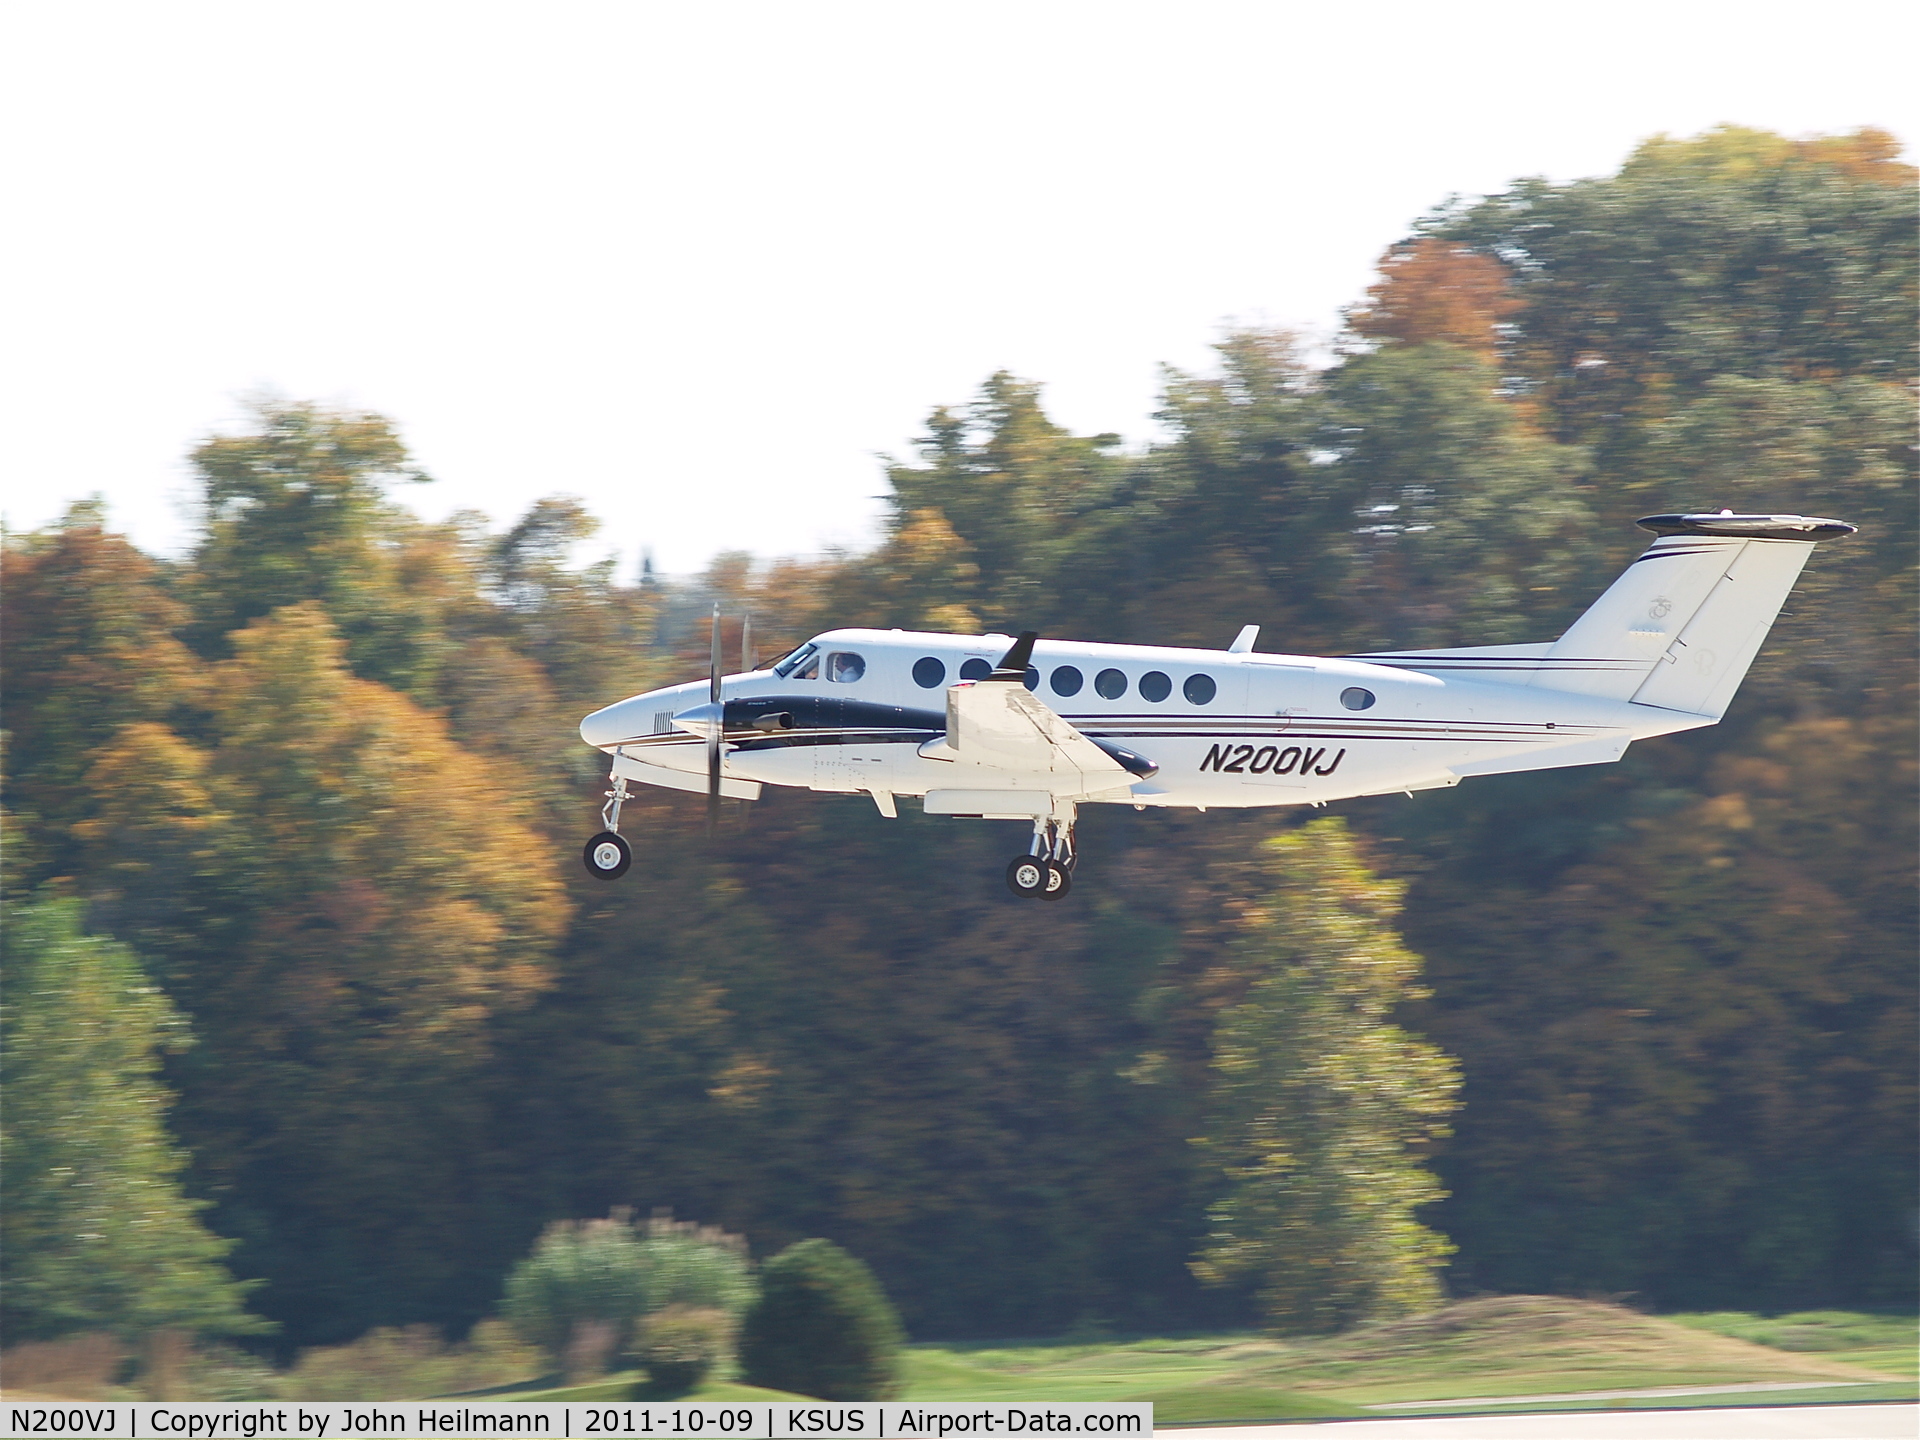 N200VJ, 1980 Beech 200 C/N BB-610, N200VJ taking off from Spirit of St Louis Airport (KSUS) runway 8R on 9 Oct 2011